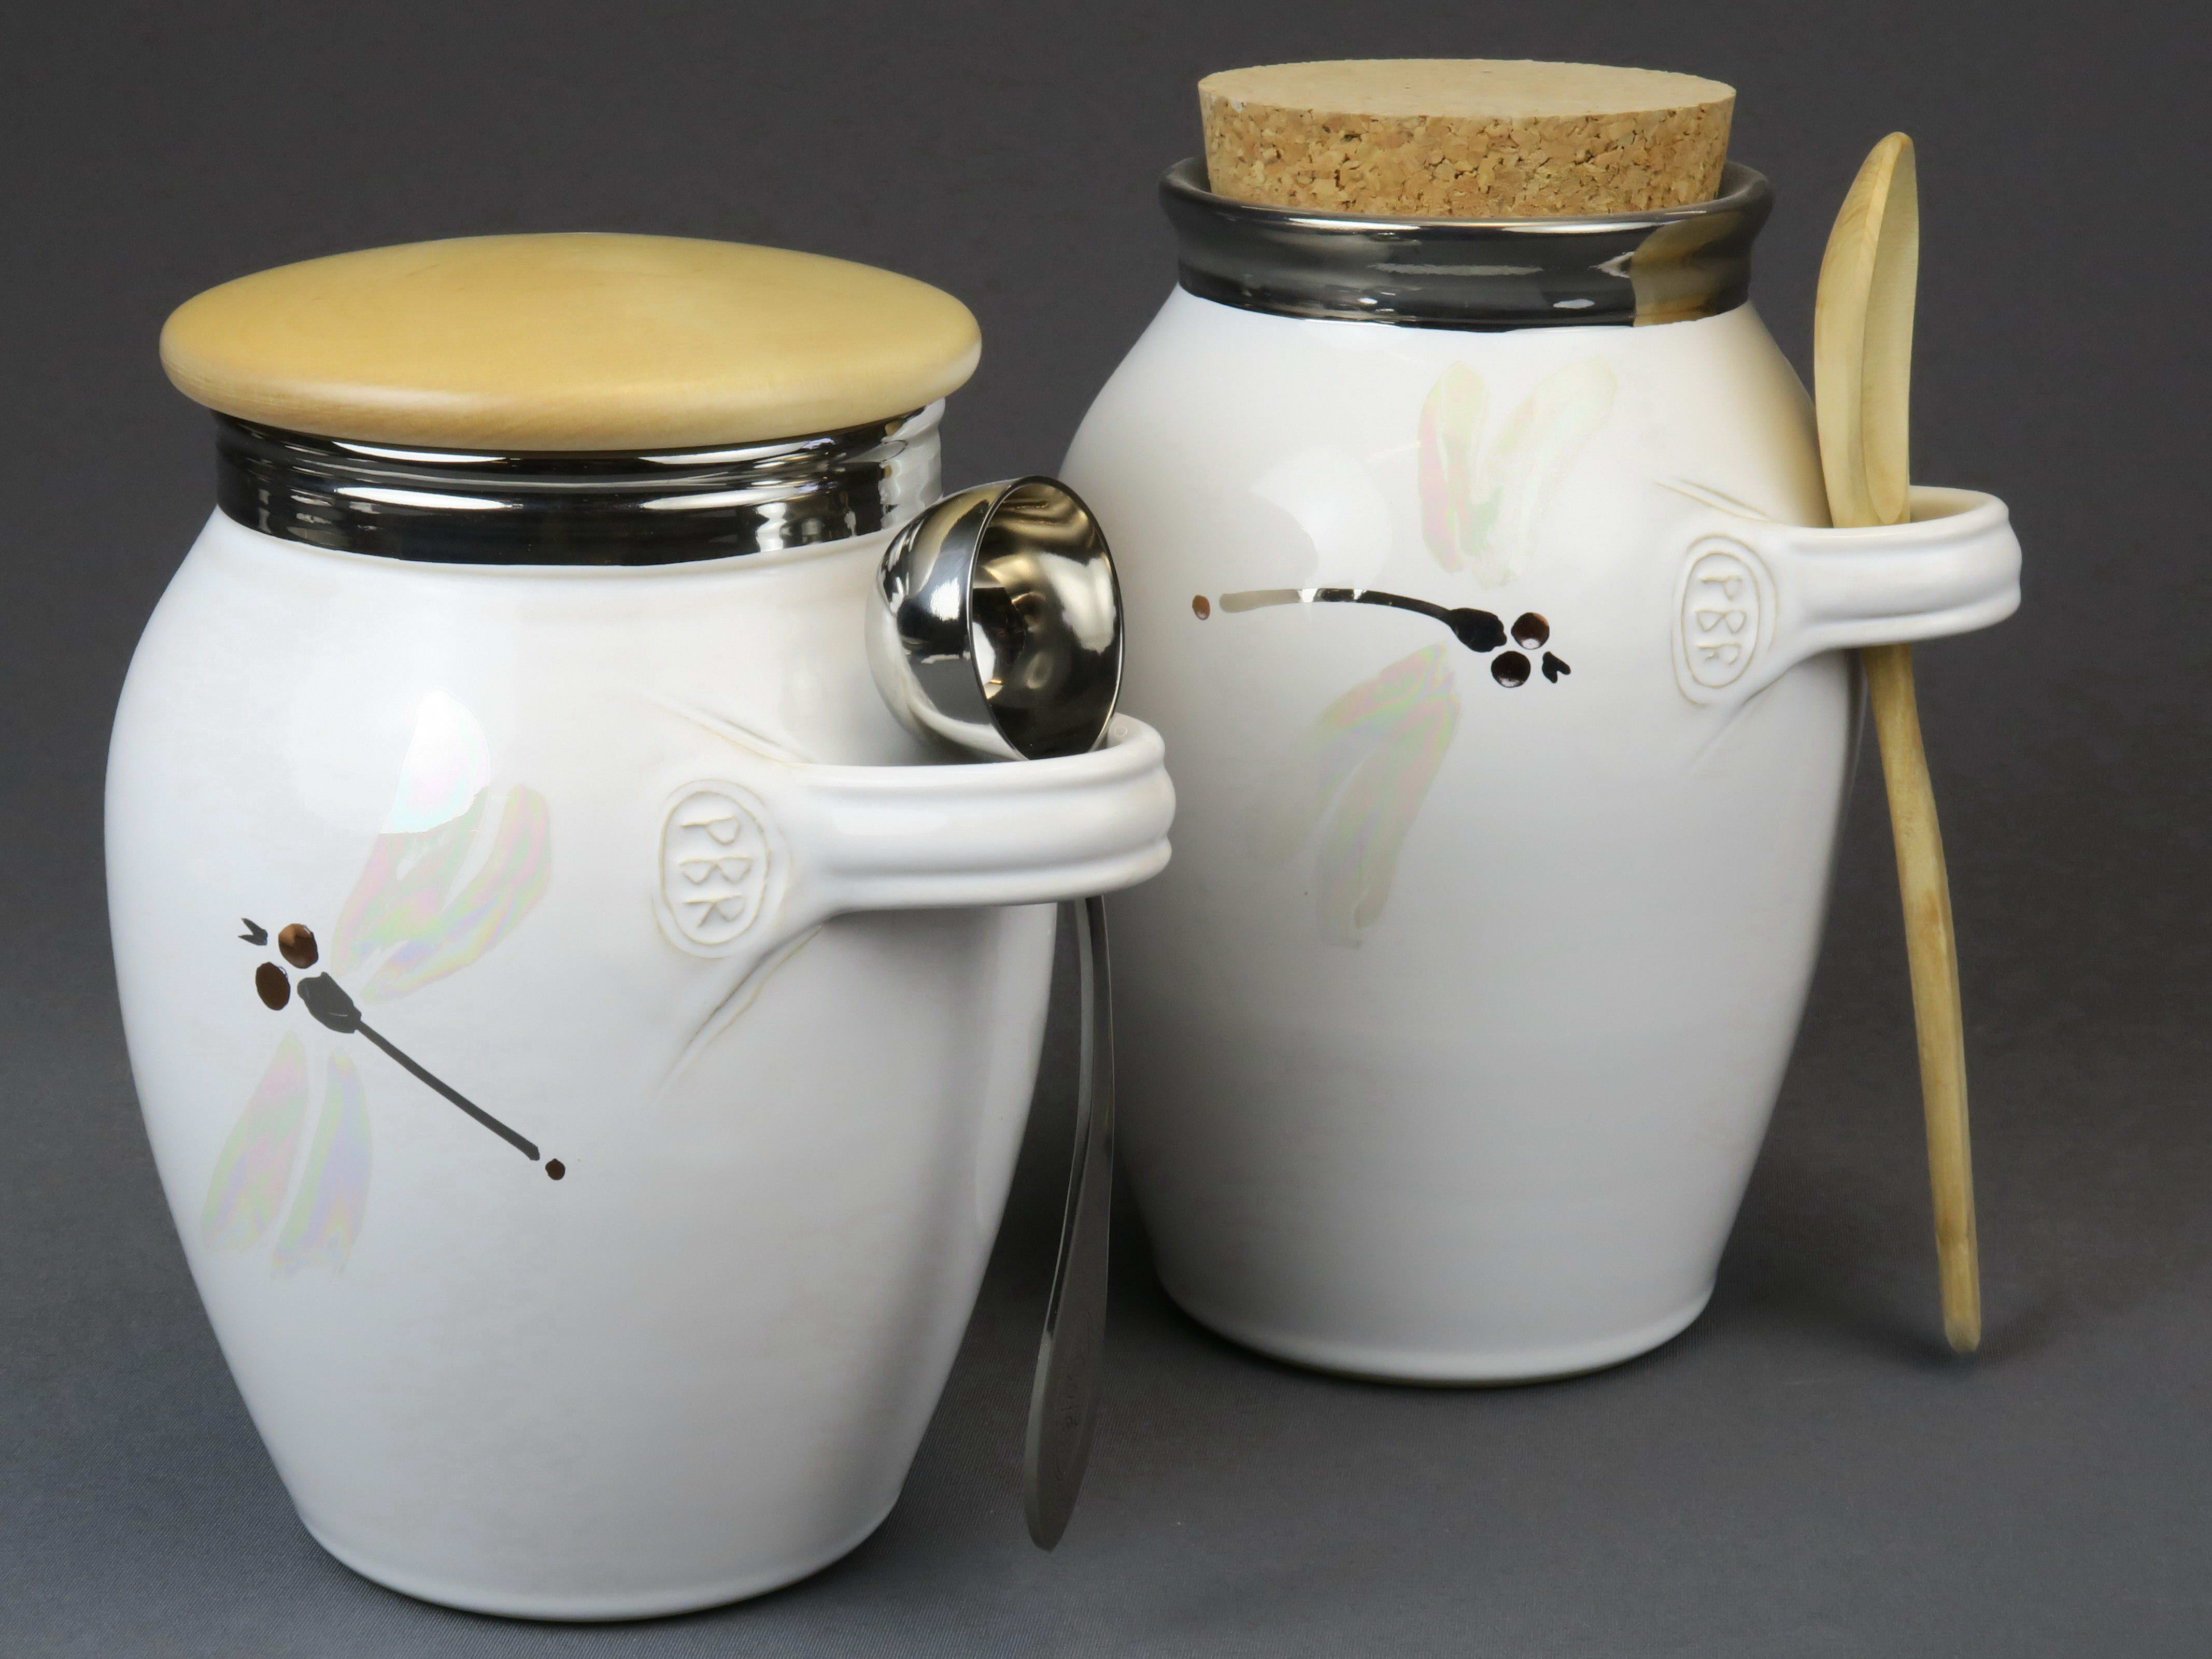 Fotografi av två vita keramikkärl med lock. Små öglor håller varsin sked.